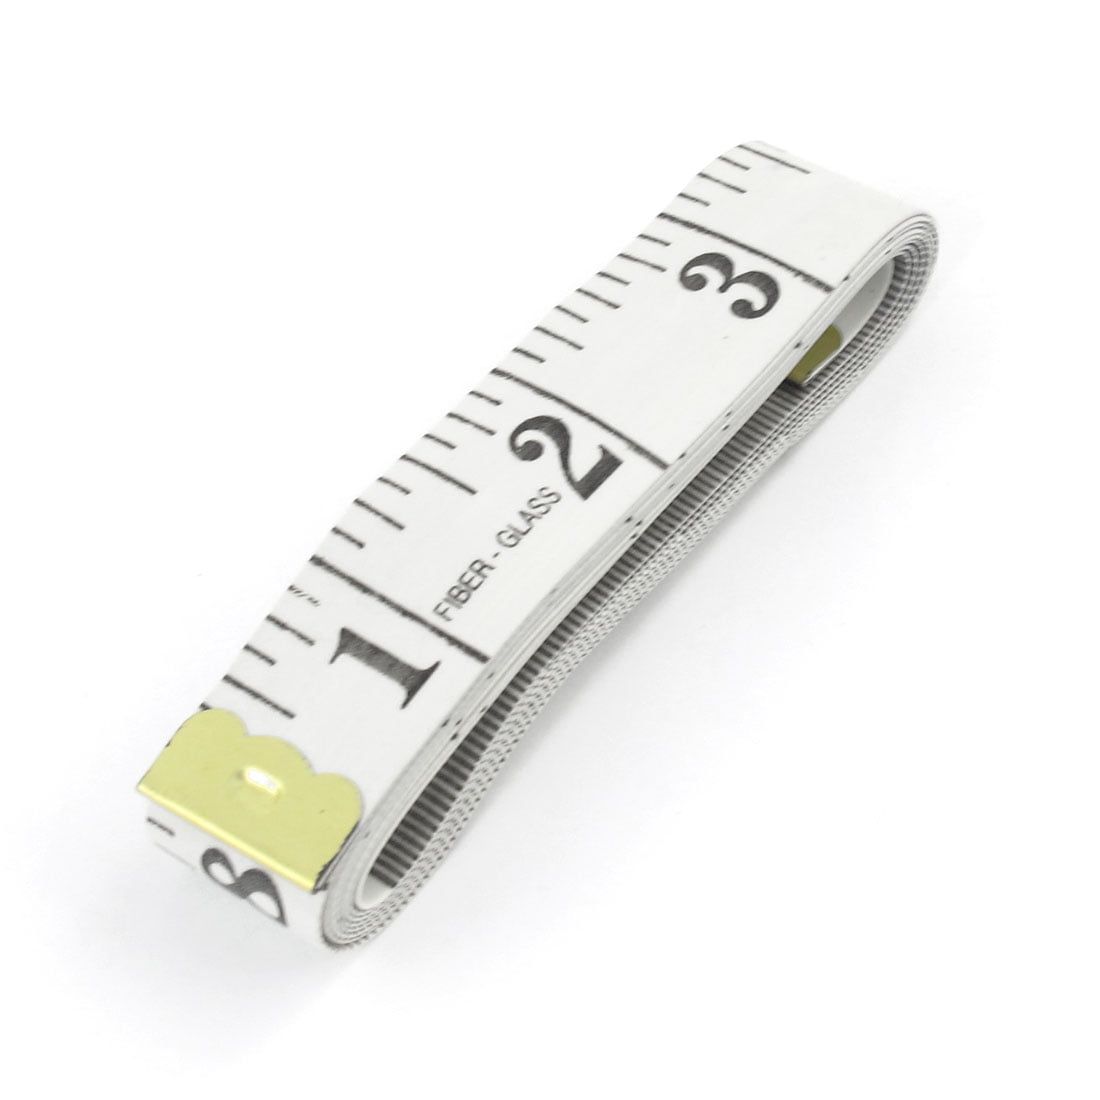 Komelon 6633 300ft Open Reel Fiberglass Tape Measure